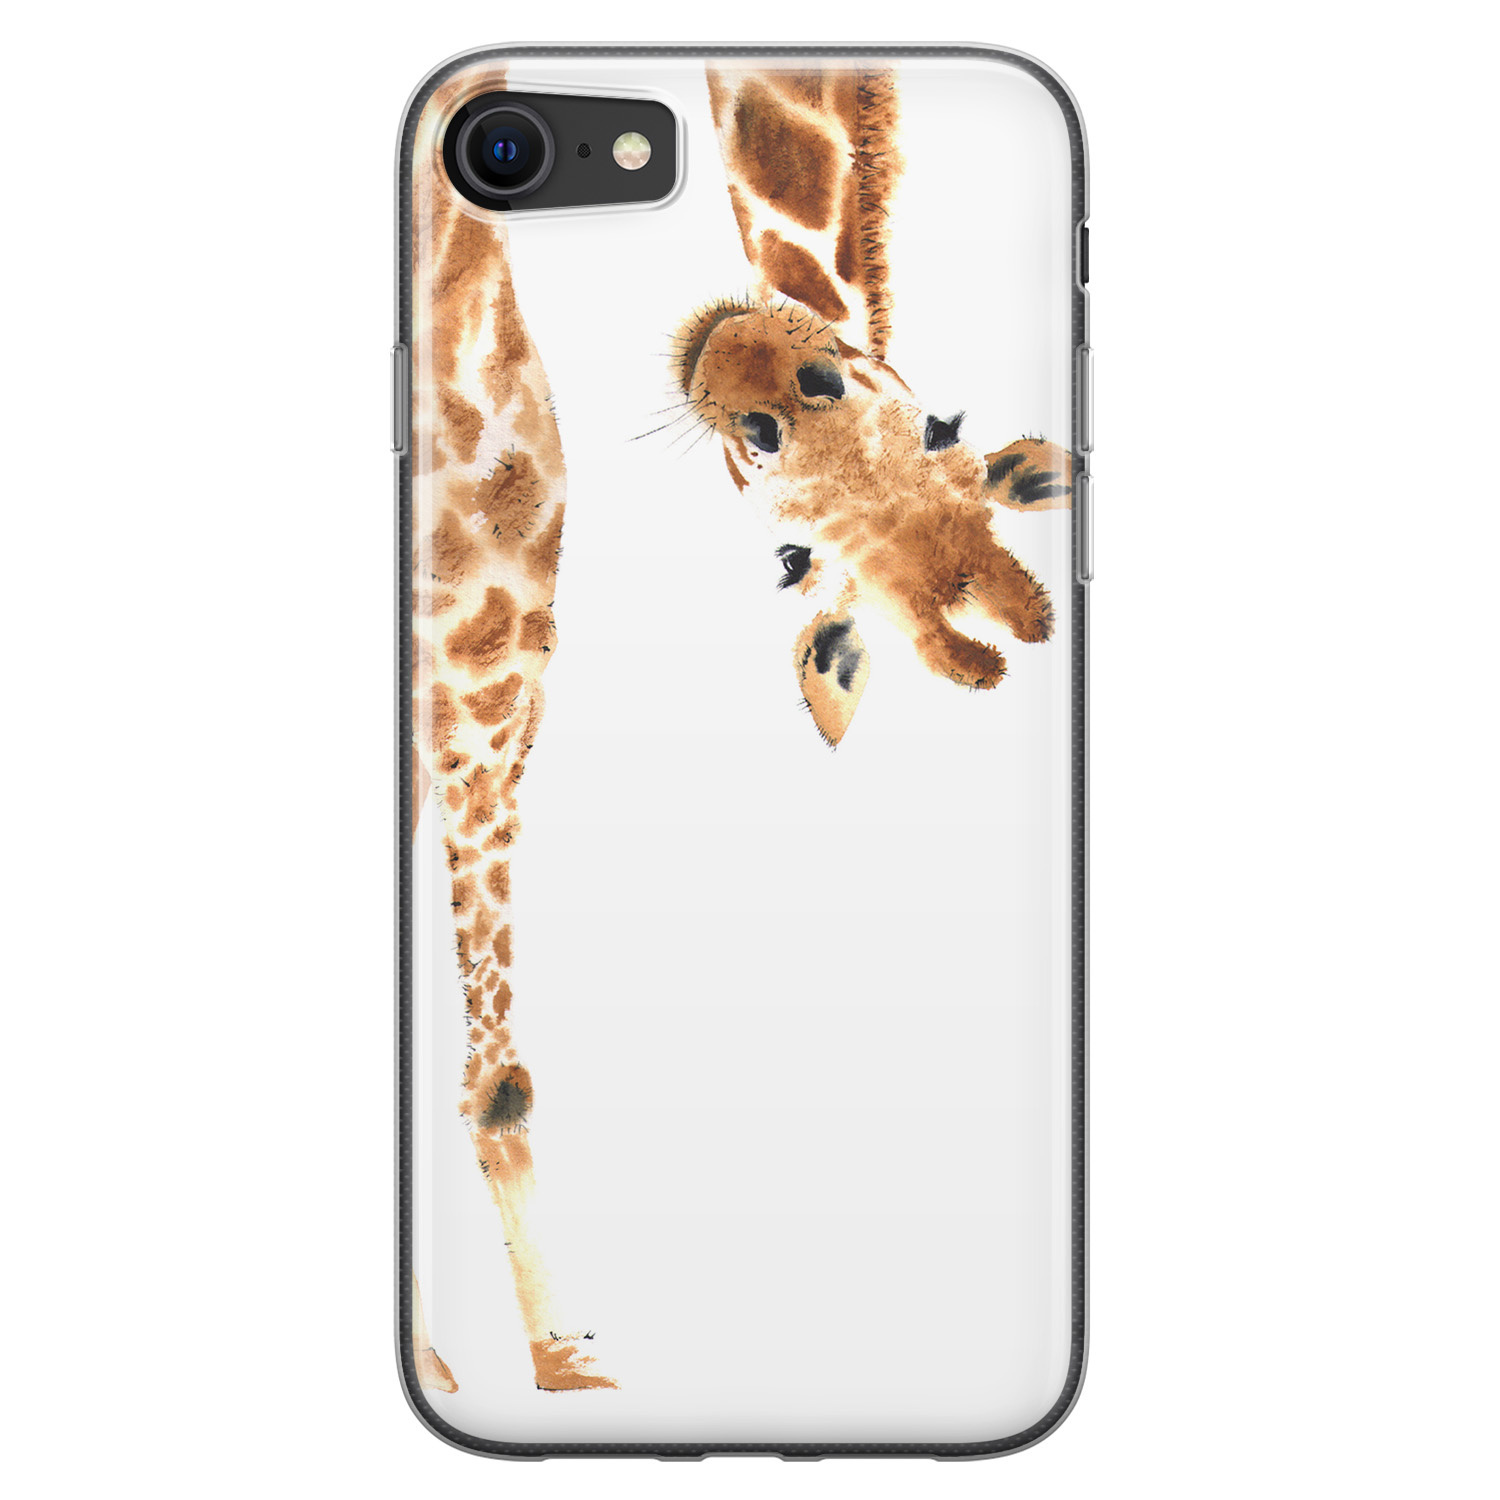 Leuke Telefoonhoesjes iPhone 8/7 siliconen hoesje - Giraffe peekaboo